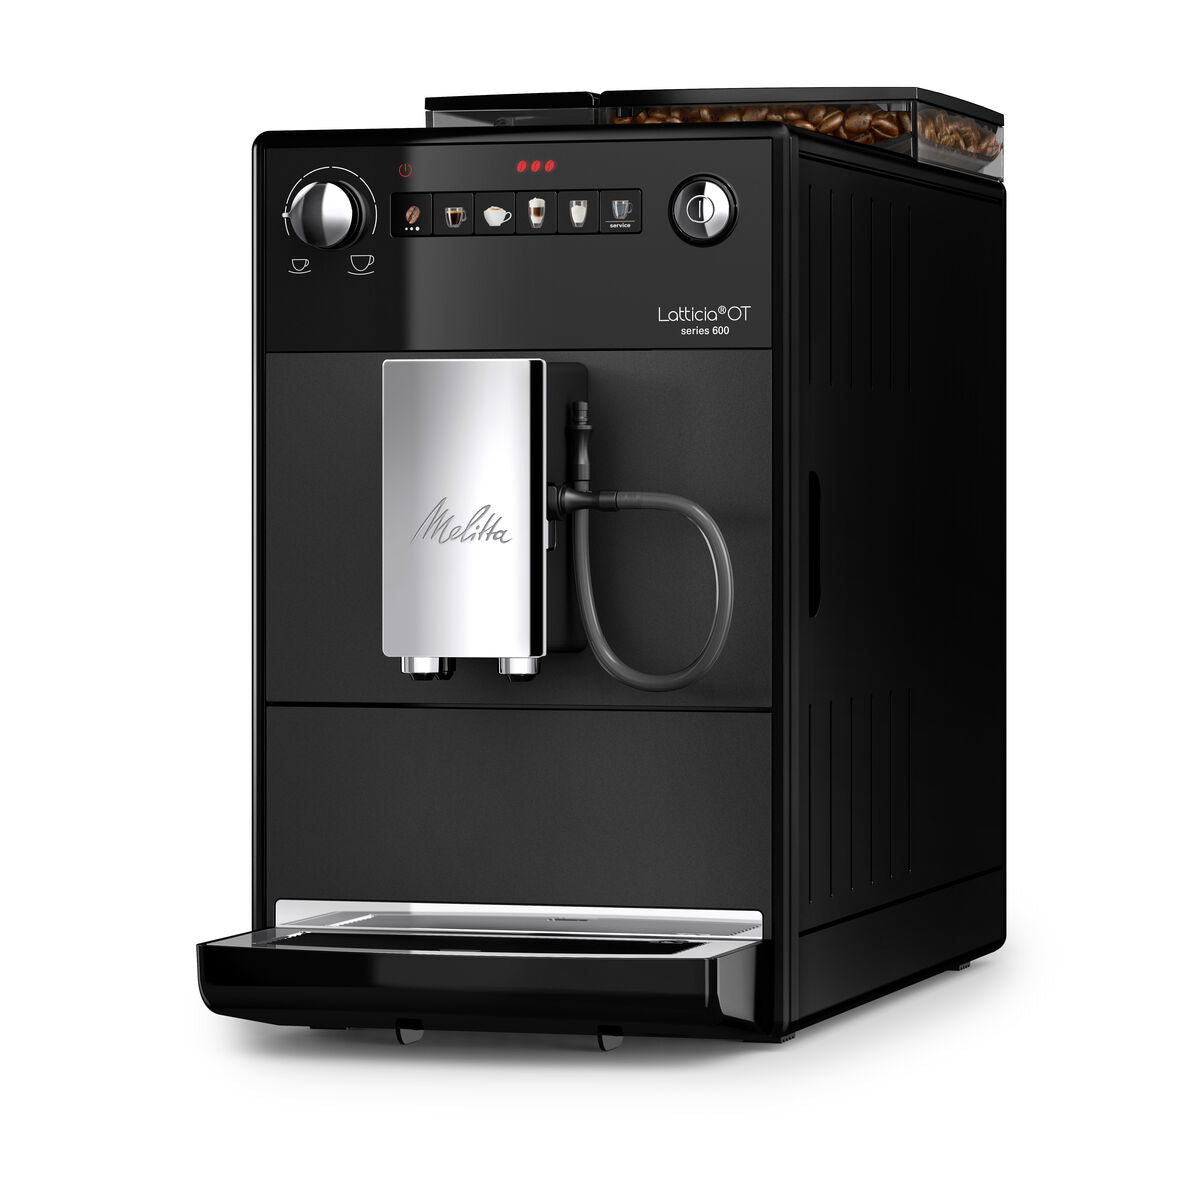 Superautomatische Kaffeemaschine Melitta F300-100 1450 W Schwarz Silberfarben 1,5 L - CA International 